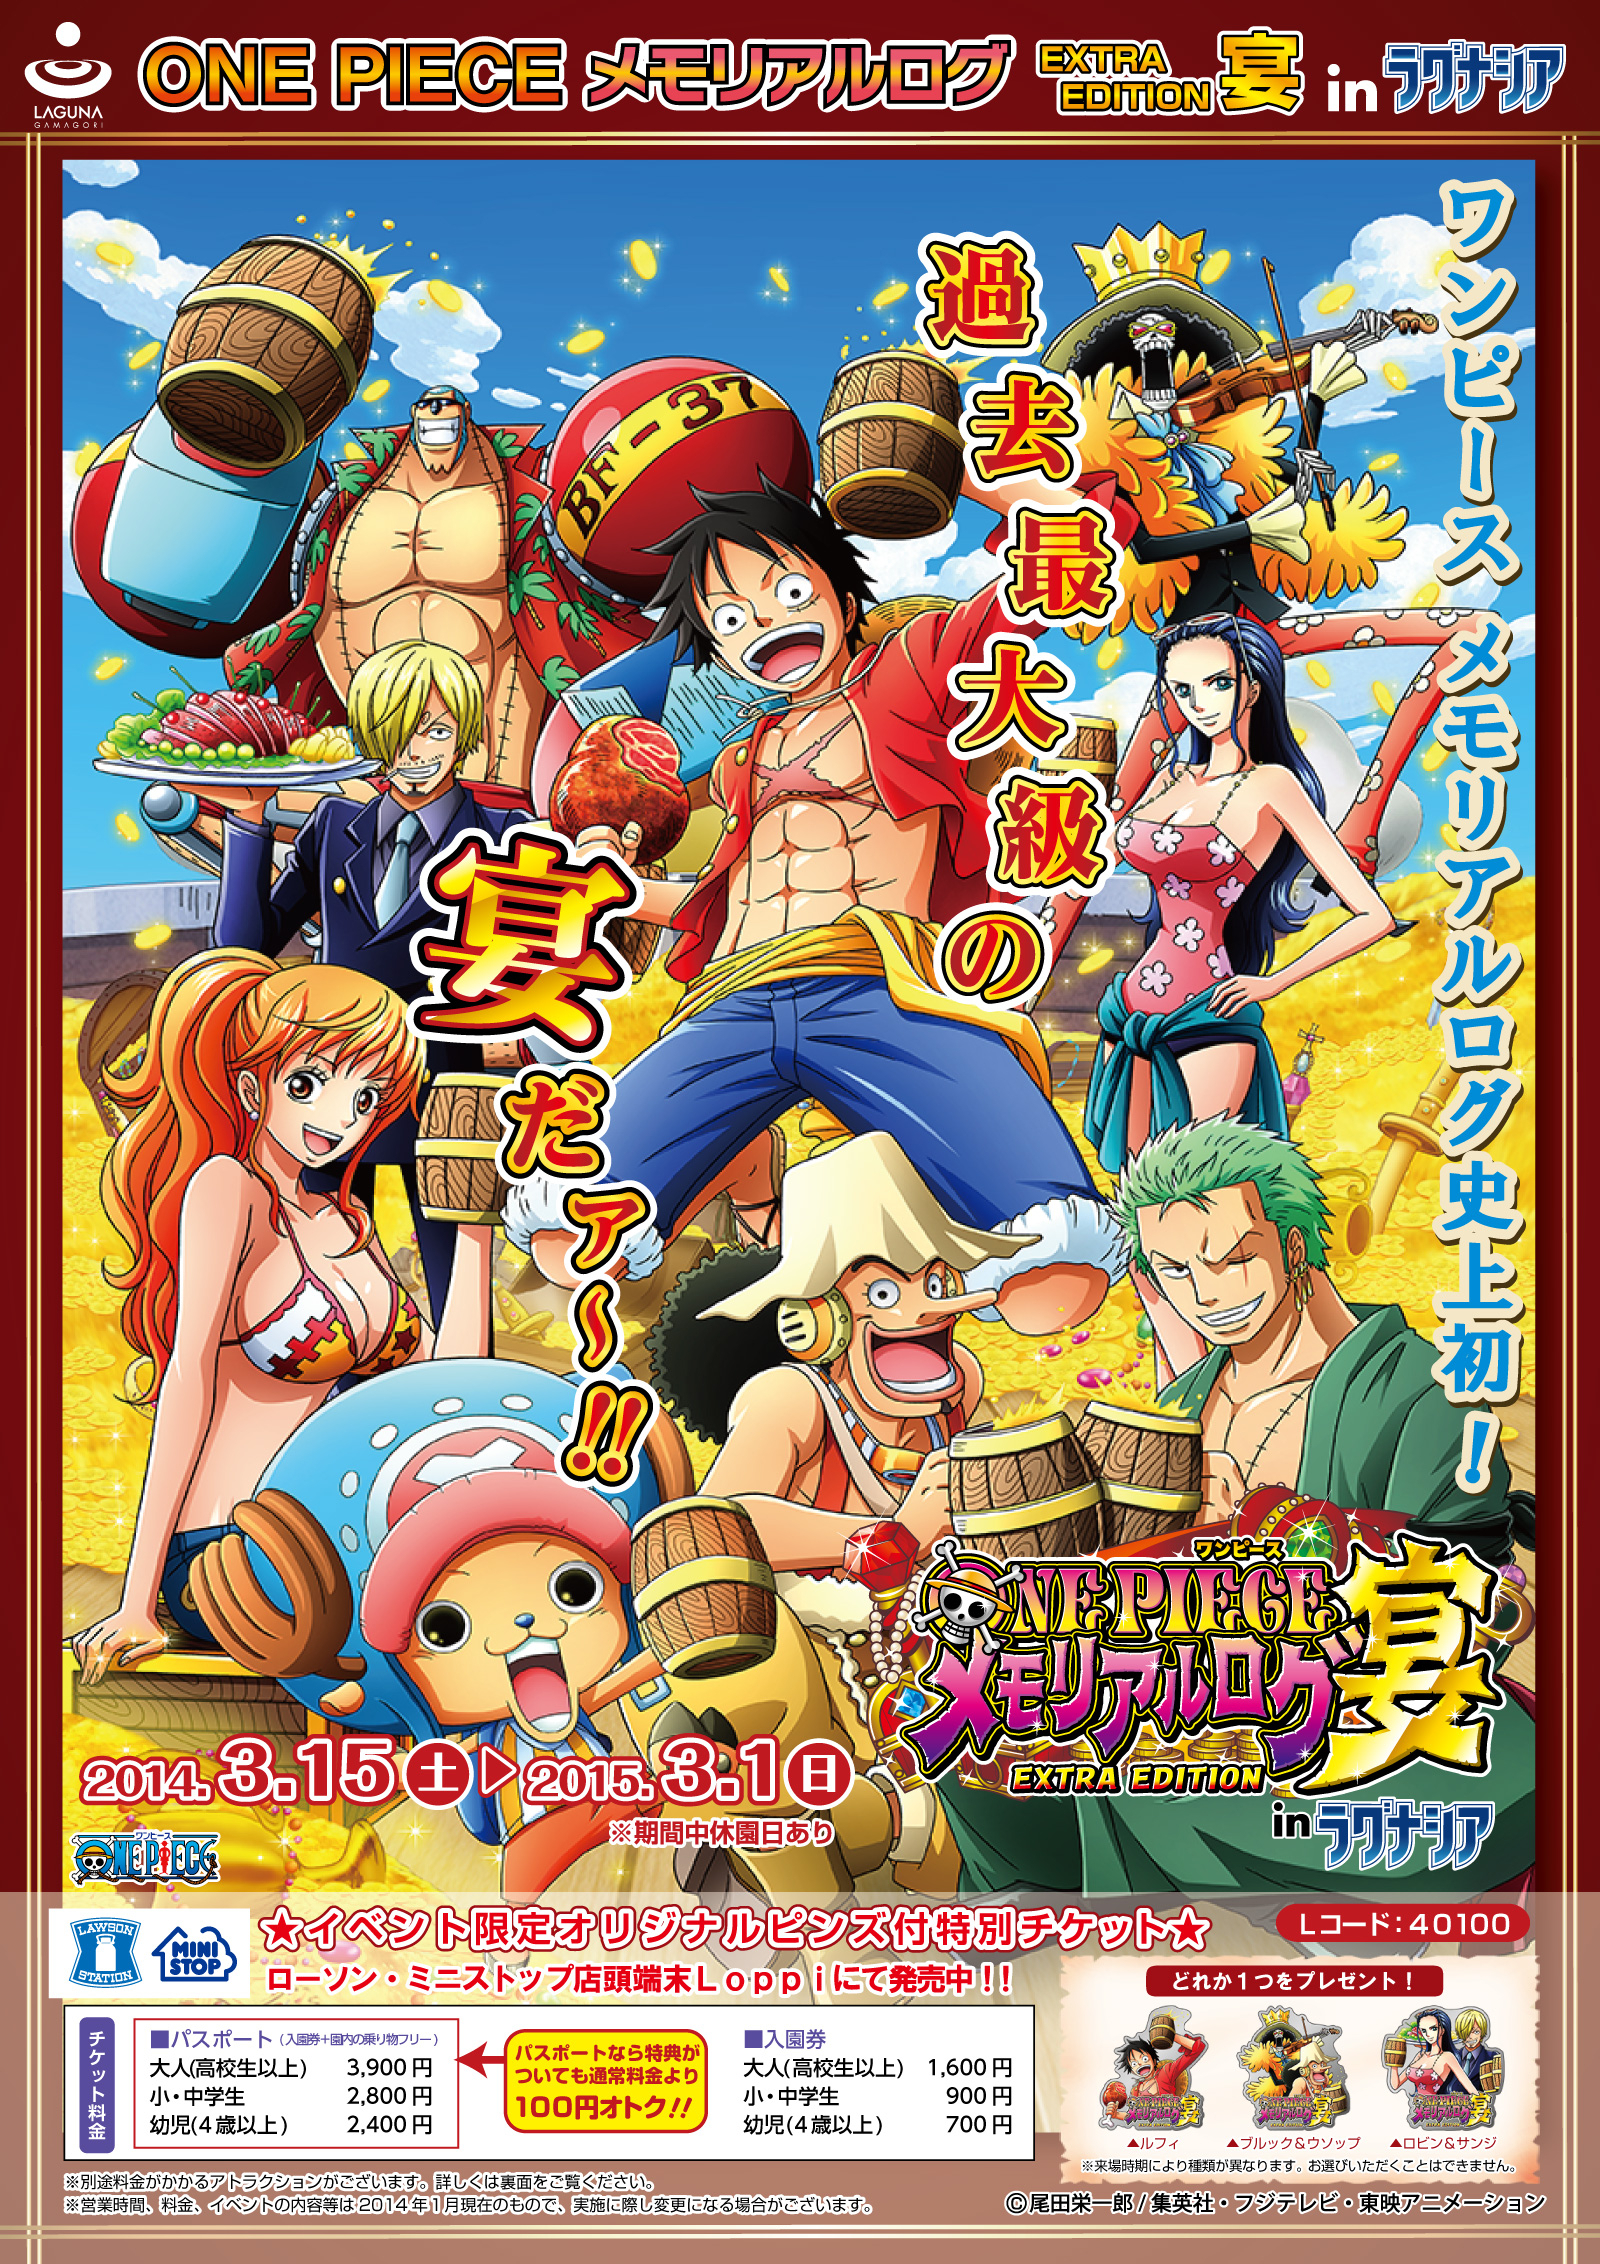 One Piece メモリアルログ Extra Edition 宴 In ラグナシア 限定ピンズ付きチケットを2月3日から全国で販売開始 蒲郡海洋開発株式会社のプレスリリース